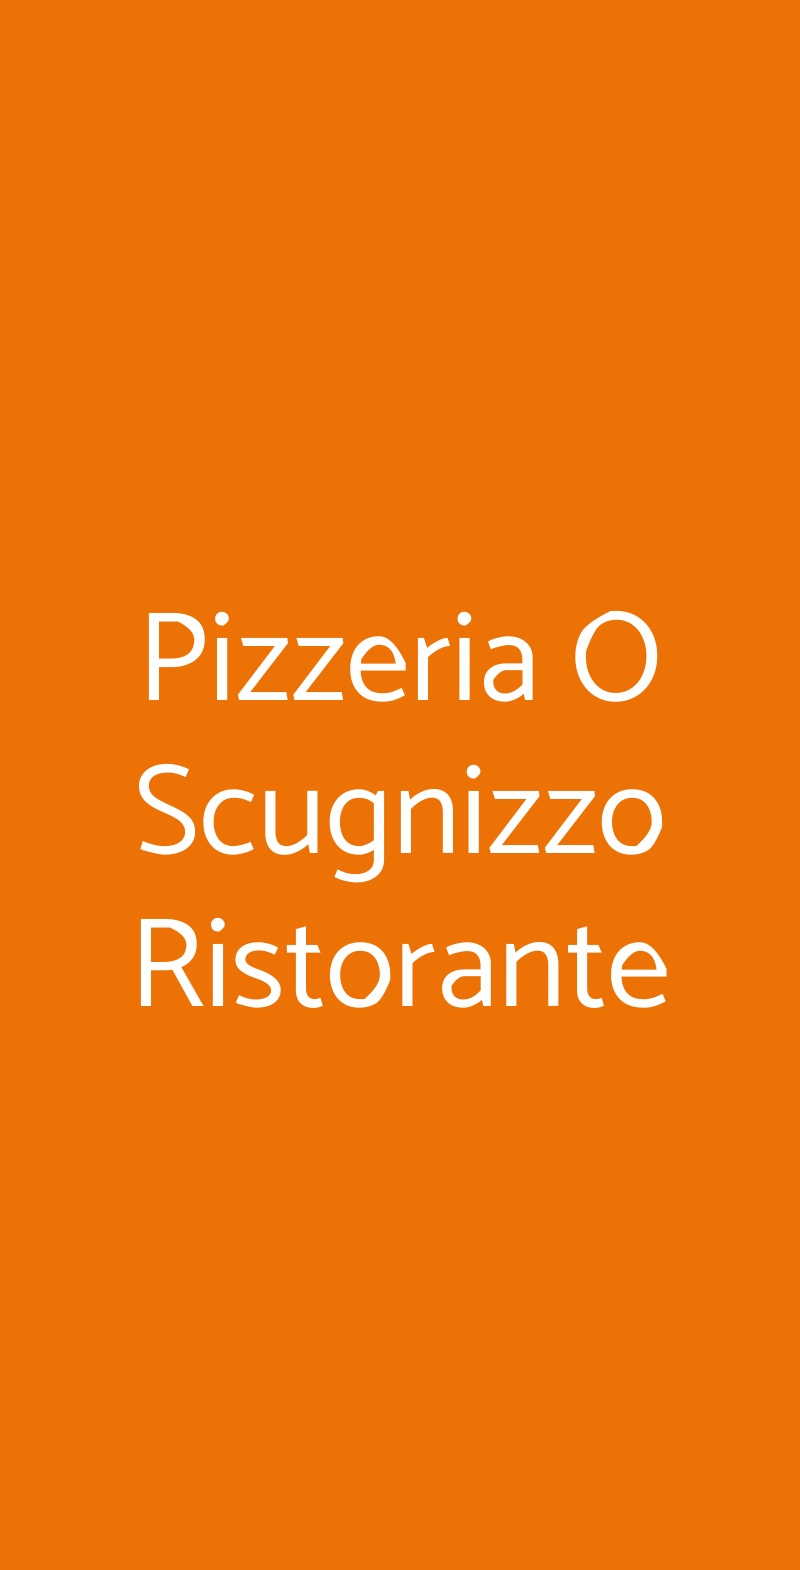 Pizzeria O Scugnizzo Ristorante Napoli menù 1 pagina